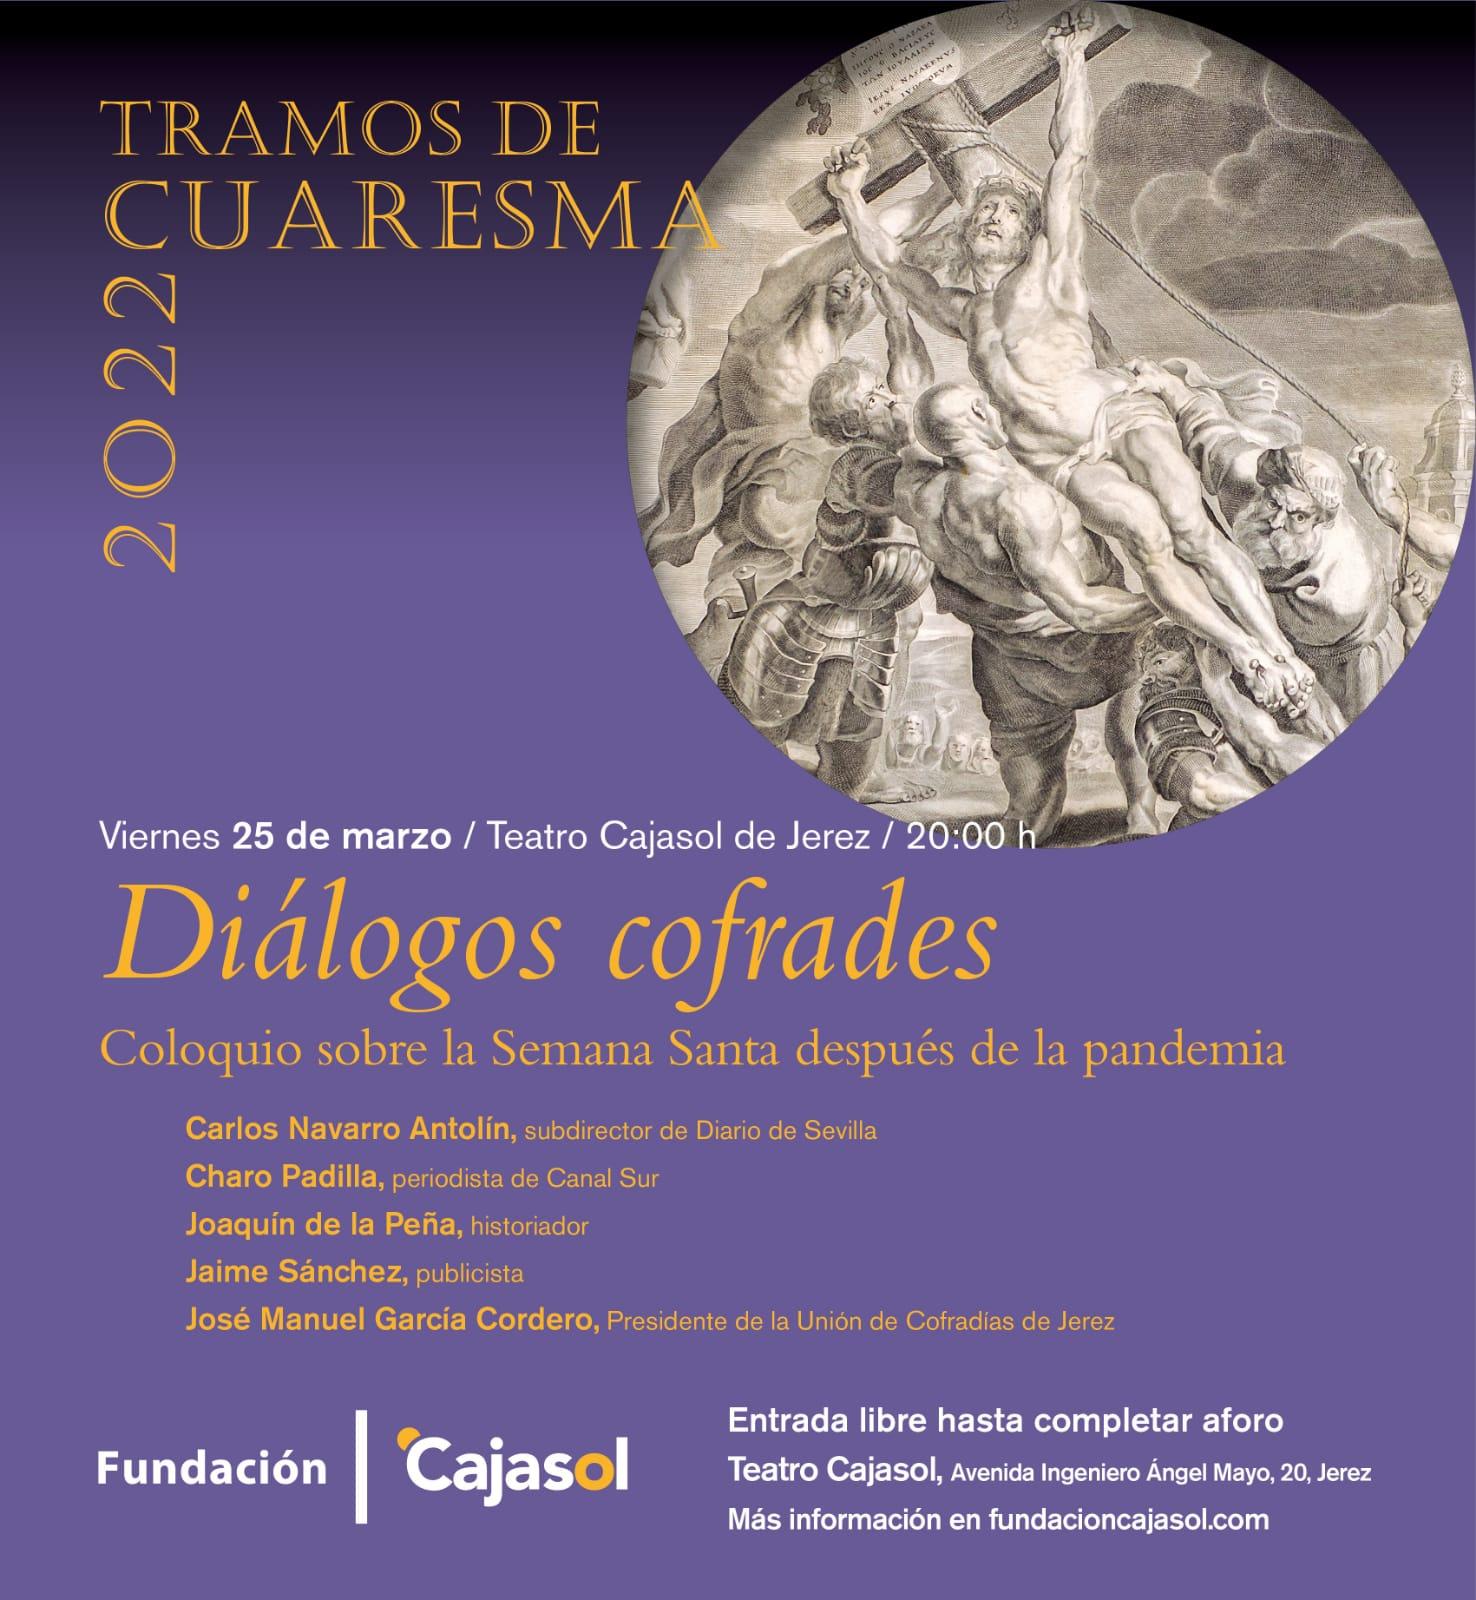 Interesante propuesta para este viernes, de la mano de la Fundación Cajasol